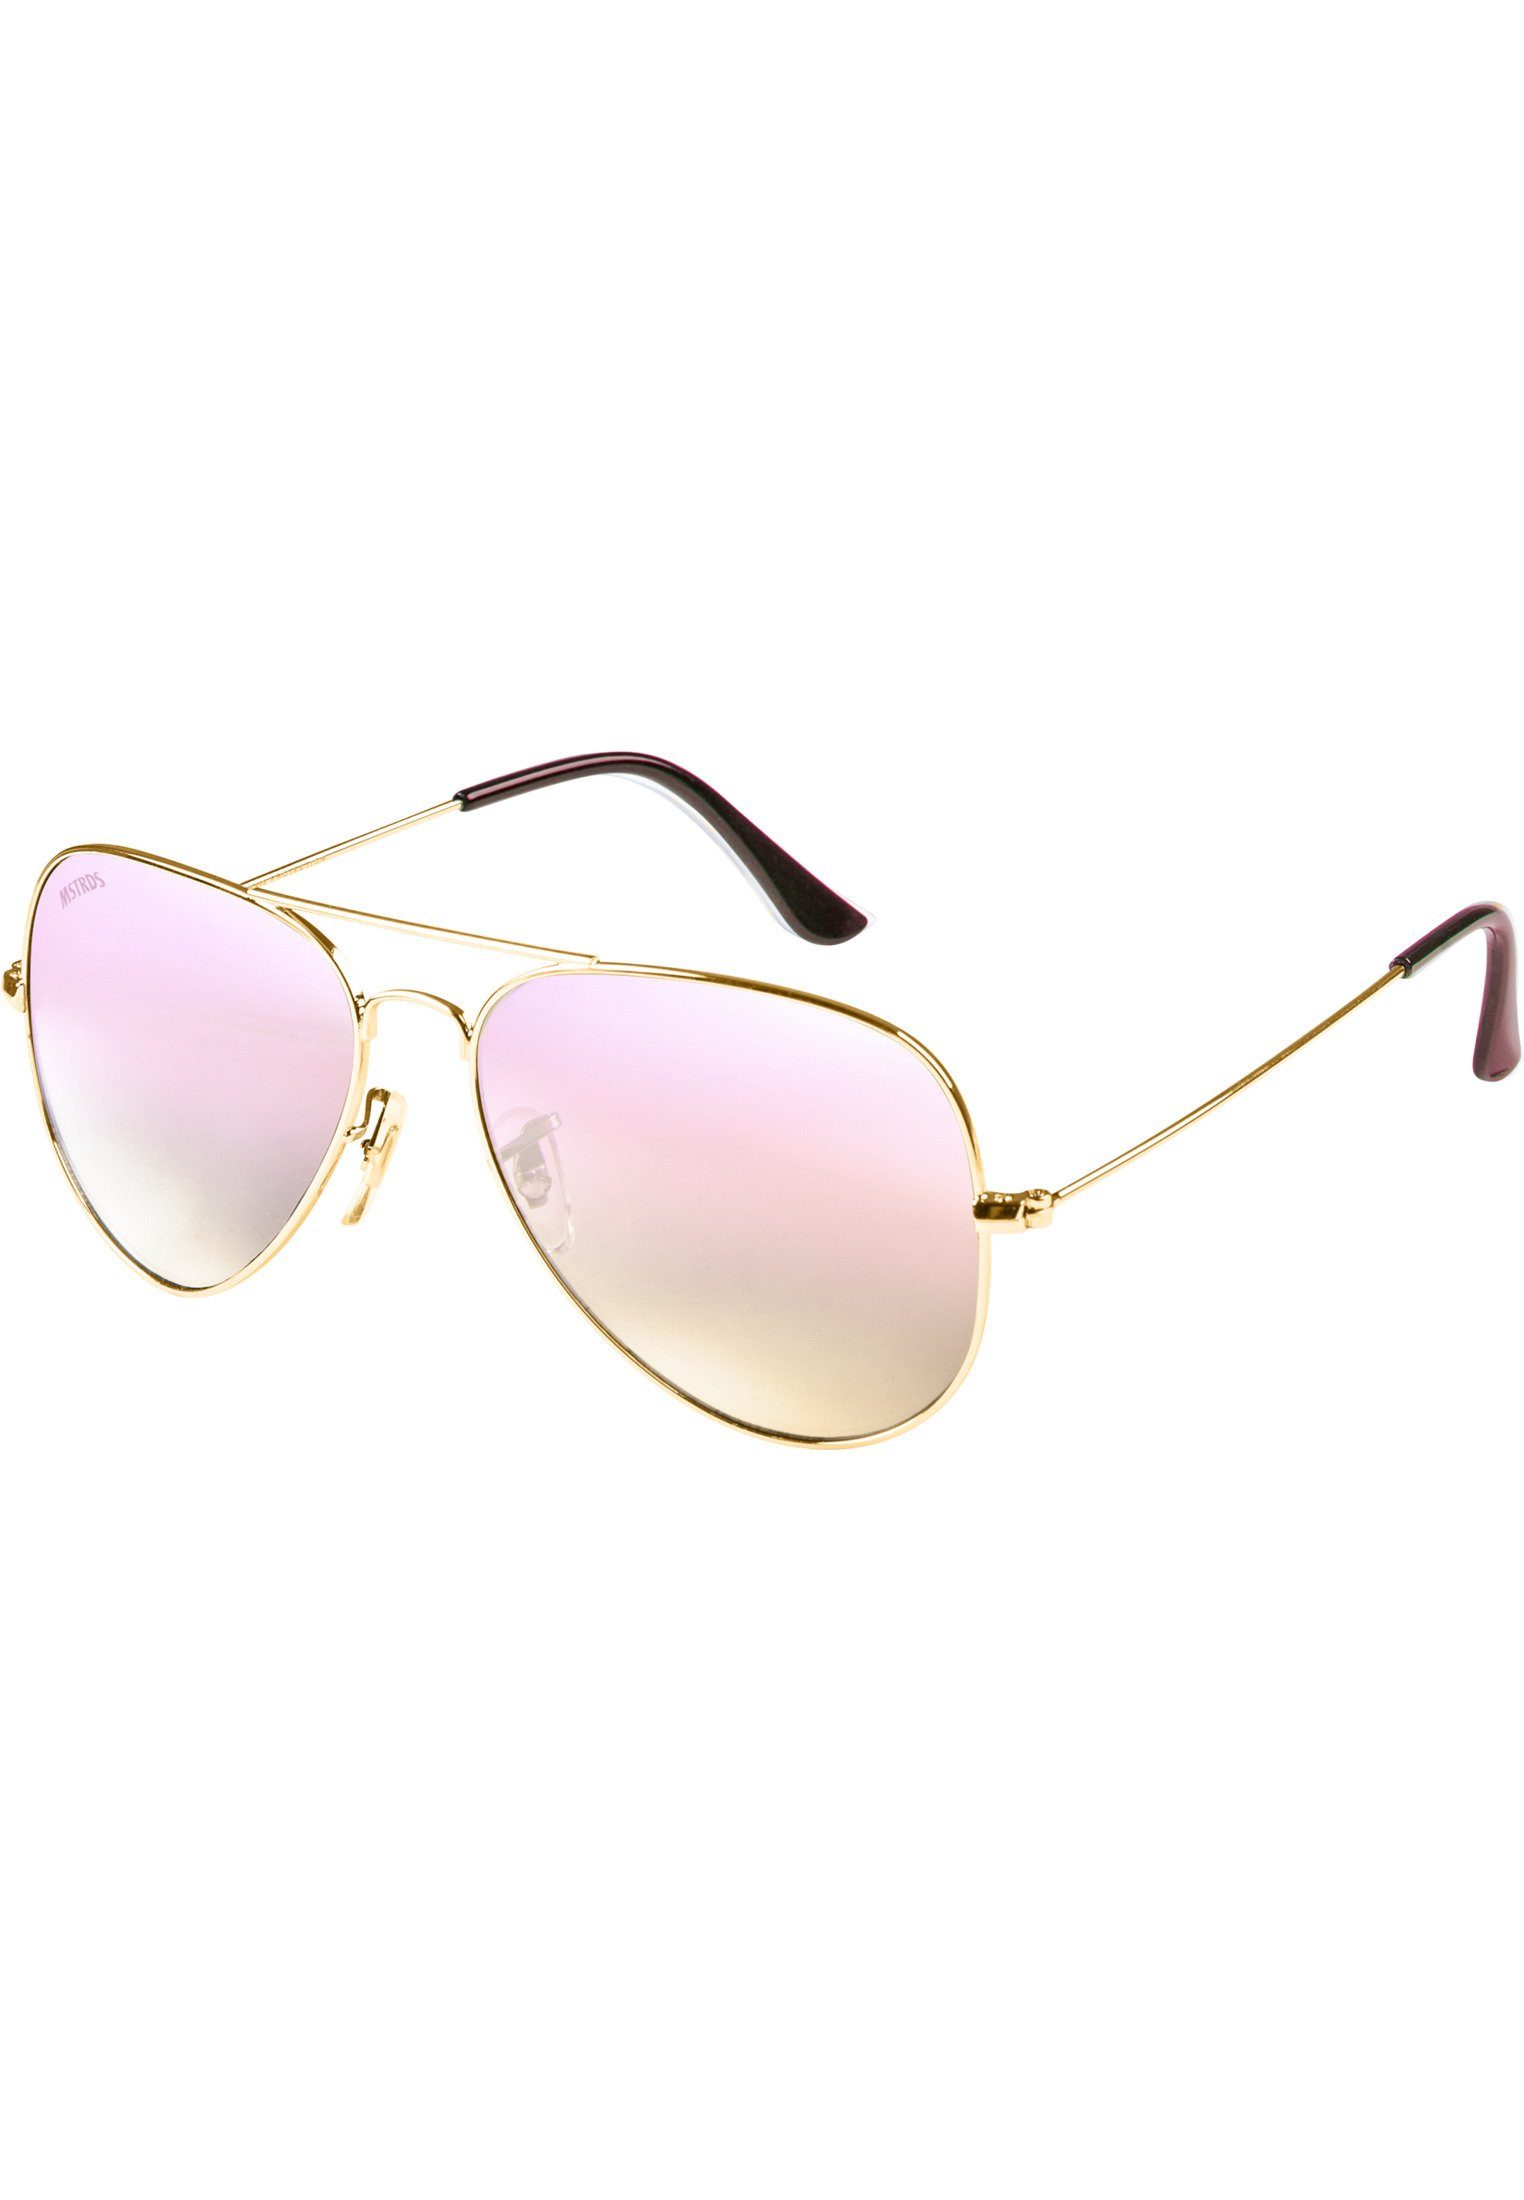 PureAv Sunglasses MSTRDS Accessoires Youth Sonnenbrille gold/rosé